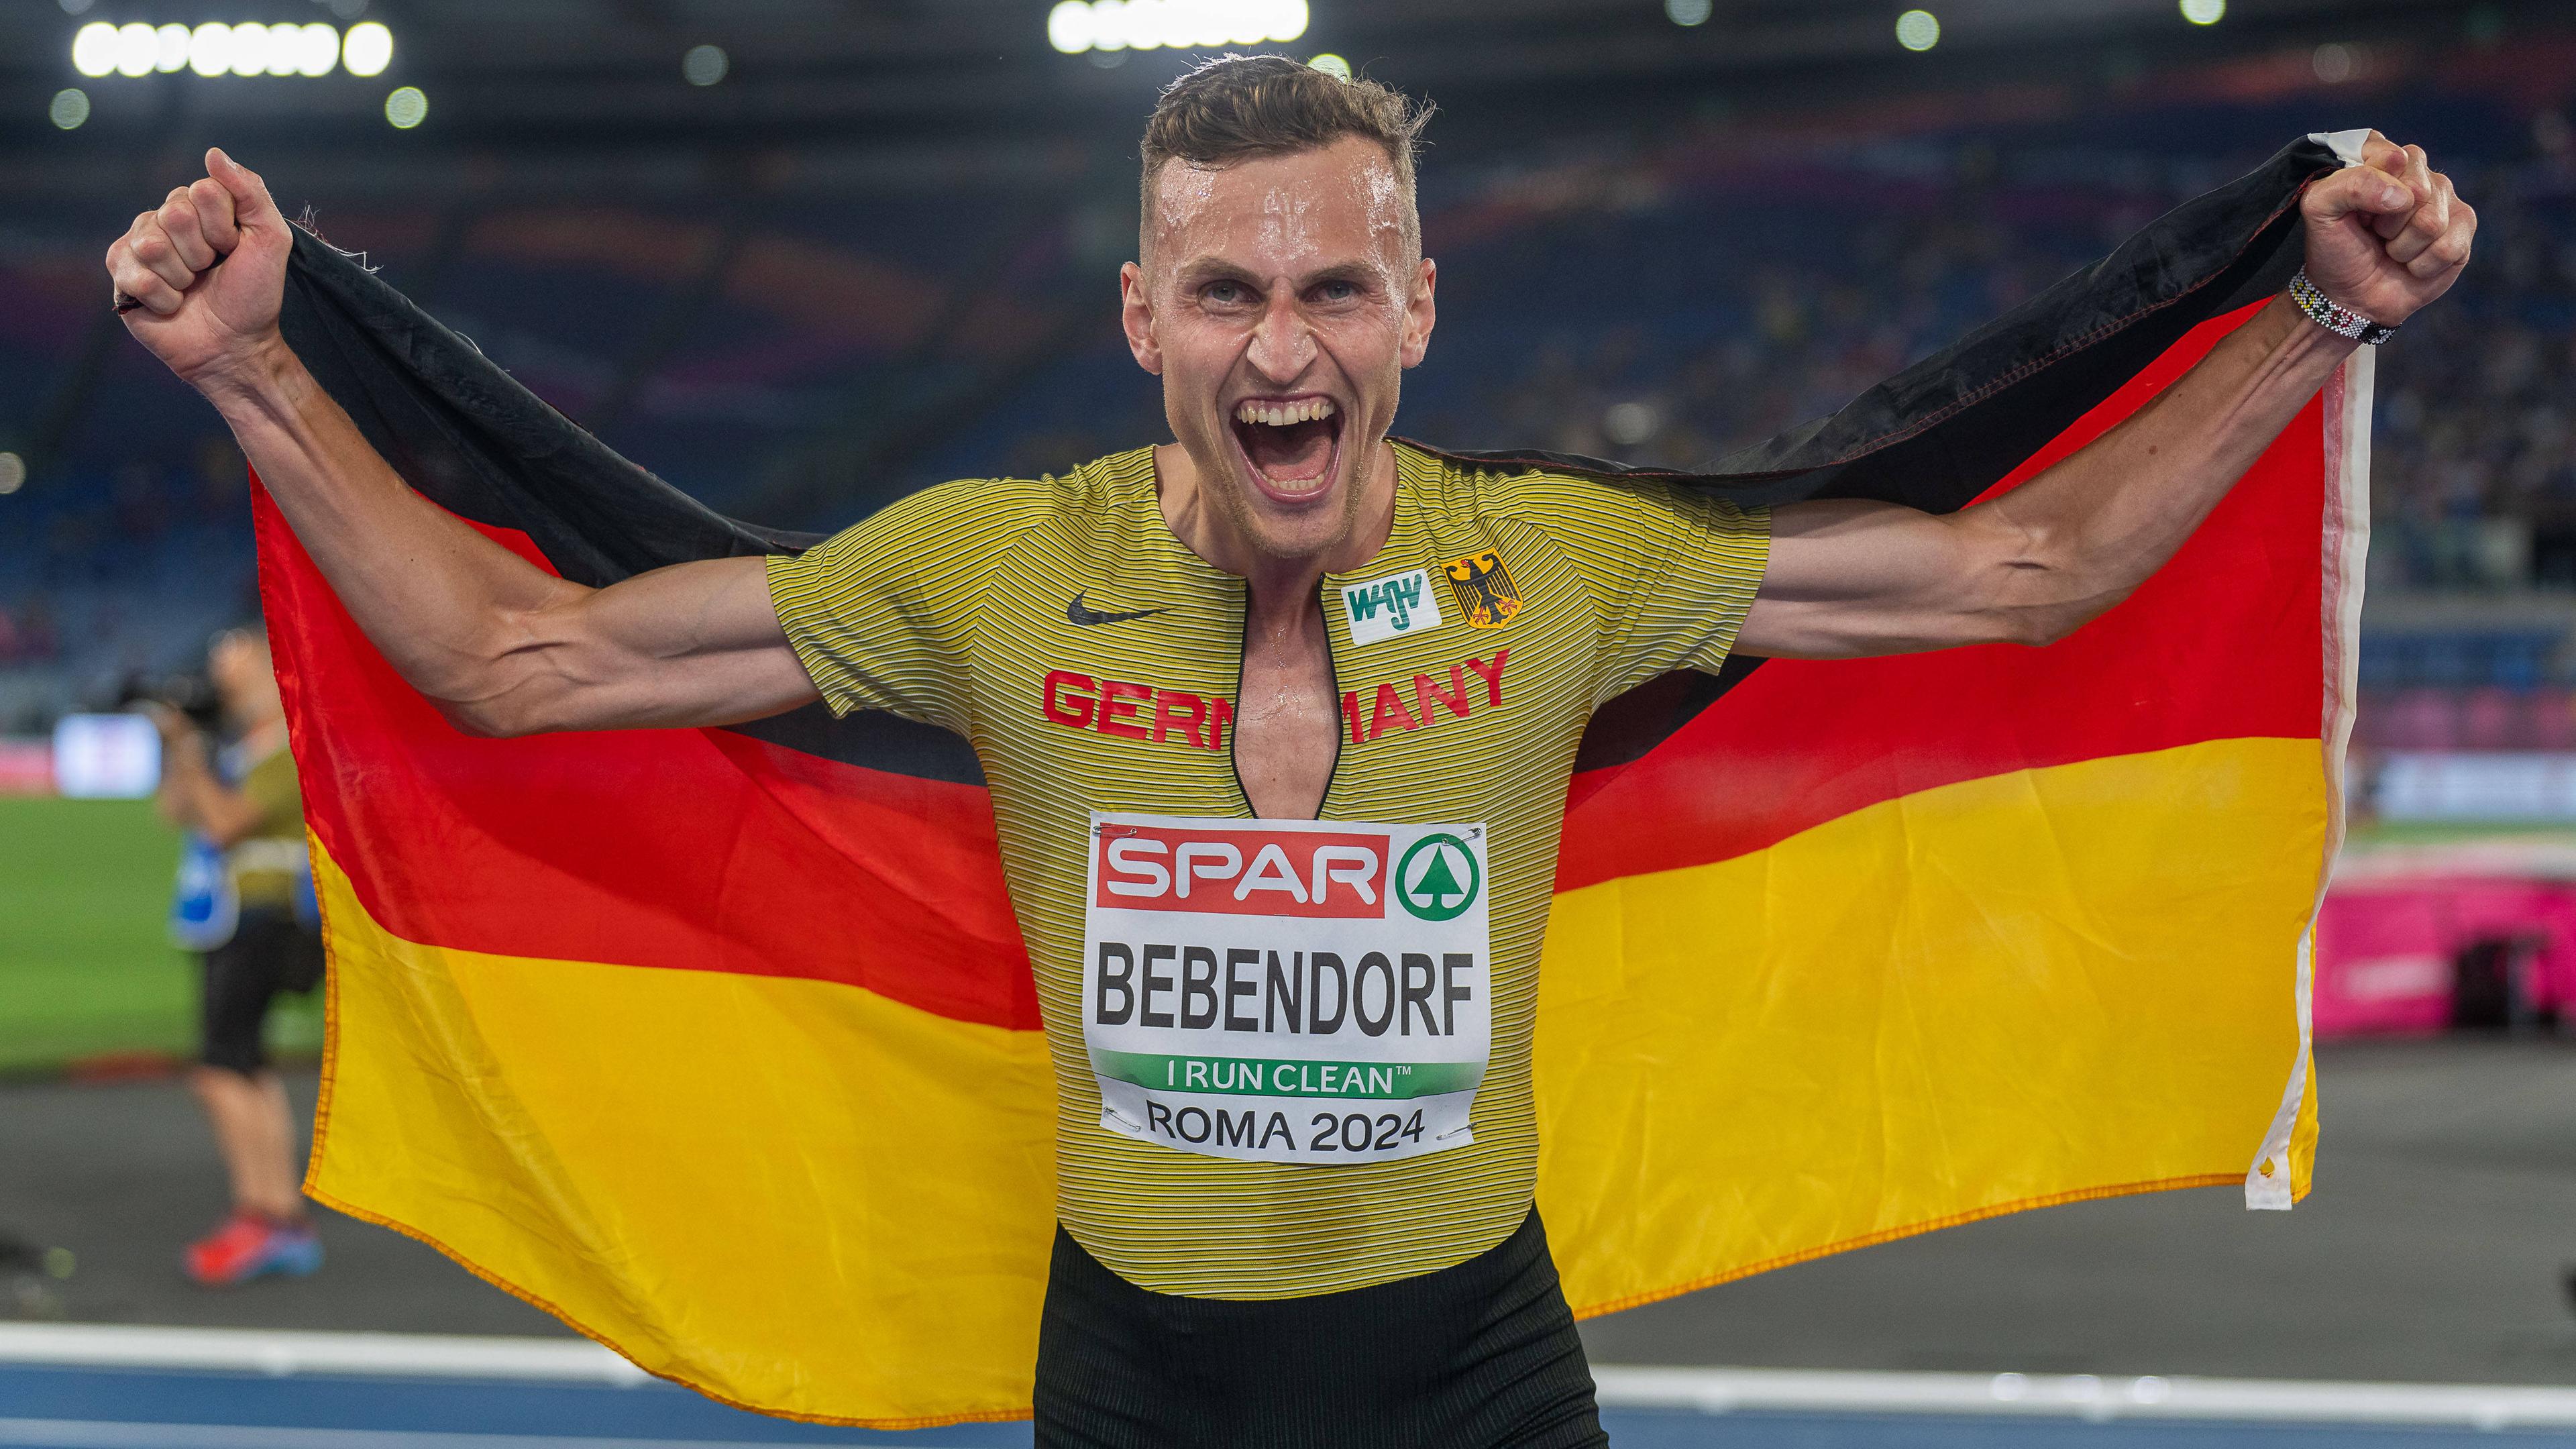 Karl Bebendorf feiert seinen dritten Platz bei dem 3000m Hindernis bei der Europameisterschaft.